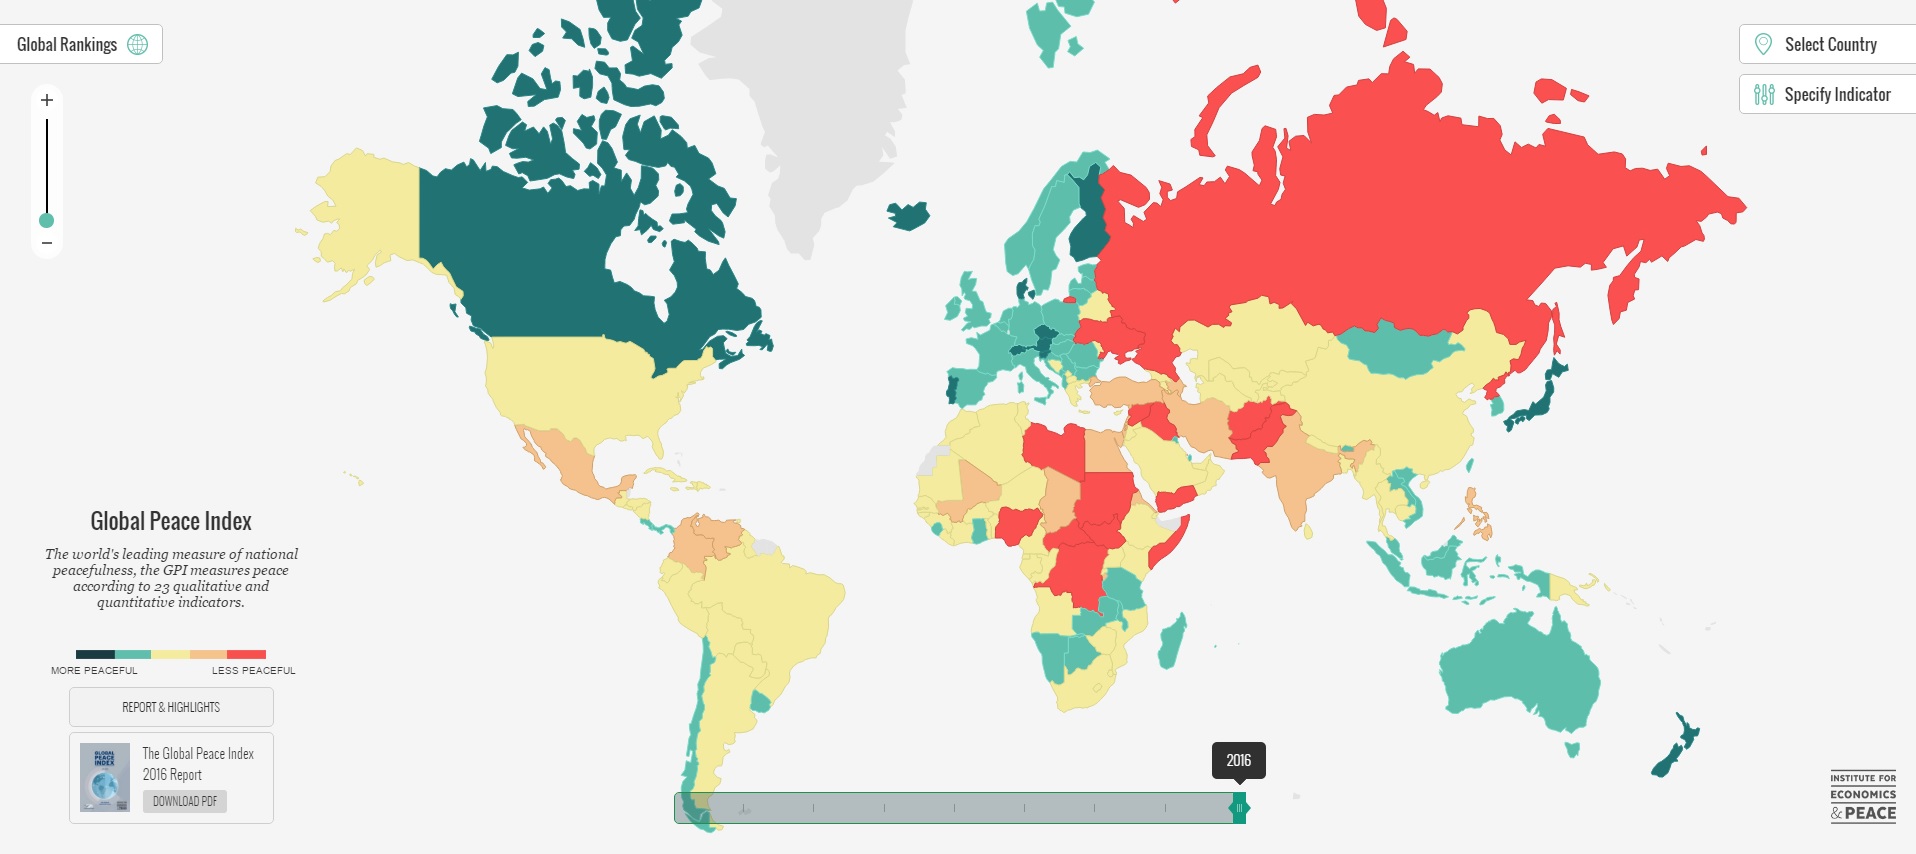 На карте темно-зелёным цветом обозначены страны с высоким уровнем безопасности. Страны с низким уровнем безопасности отмечены желтым и красными цветами.